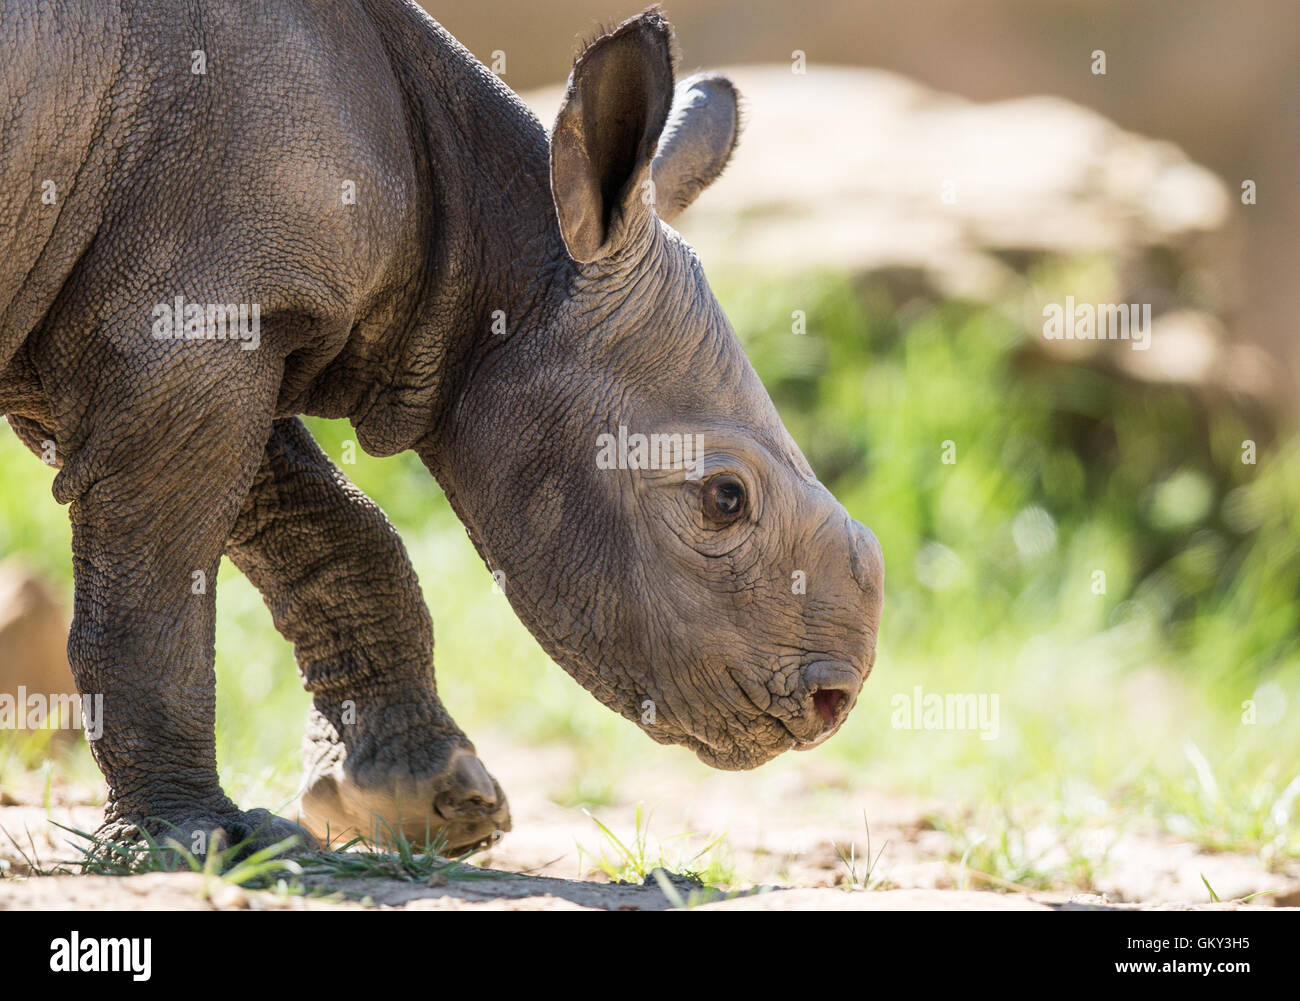 En Krefeld, Alemania. 23 Aug, 2016. El bebé rinoceronte en un recinto al aire libre en el zoológico en Krefeld, Alemania, 23 de agosto de 2016. Los rinocerontes negros en el zoológico tuvo su quinto hijo durante la noche del 21-22 de agosto. Foto: Marcel KUSCH/dpa/Alamy Live News Foto de stock